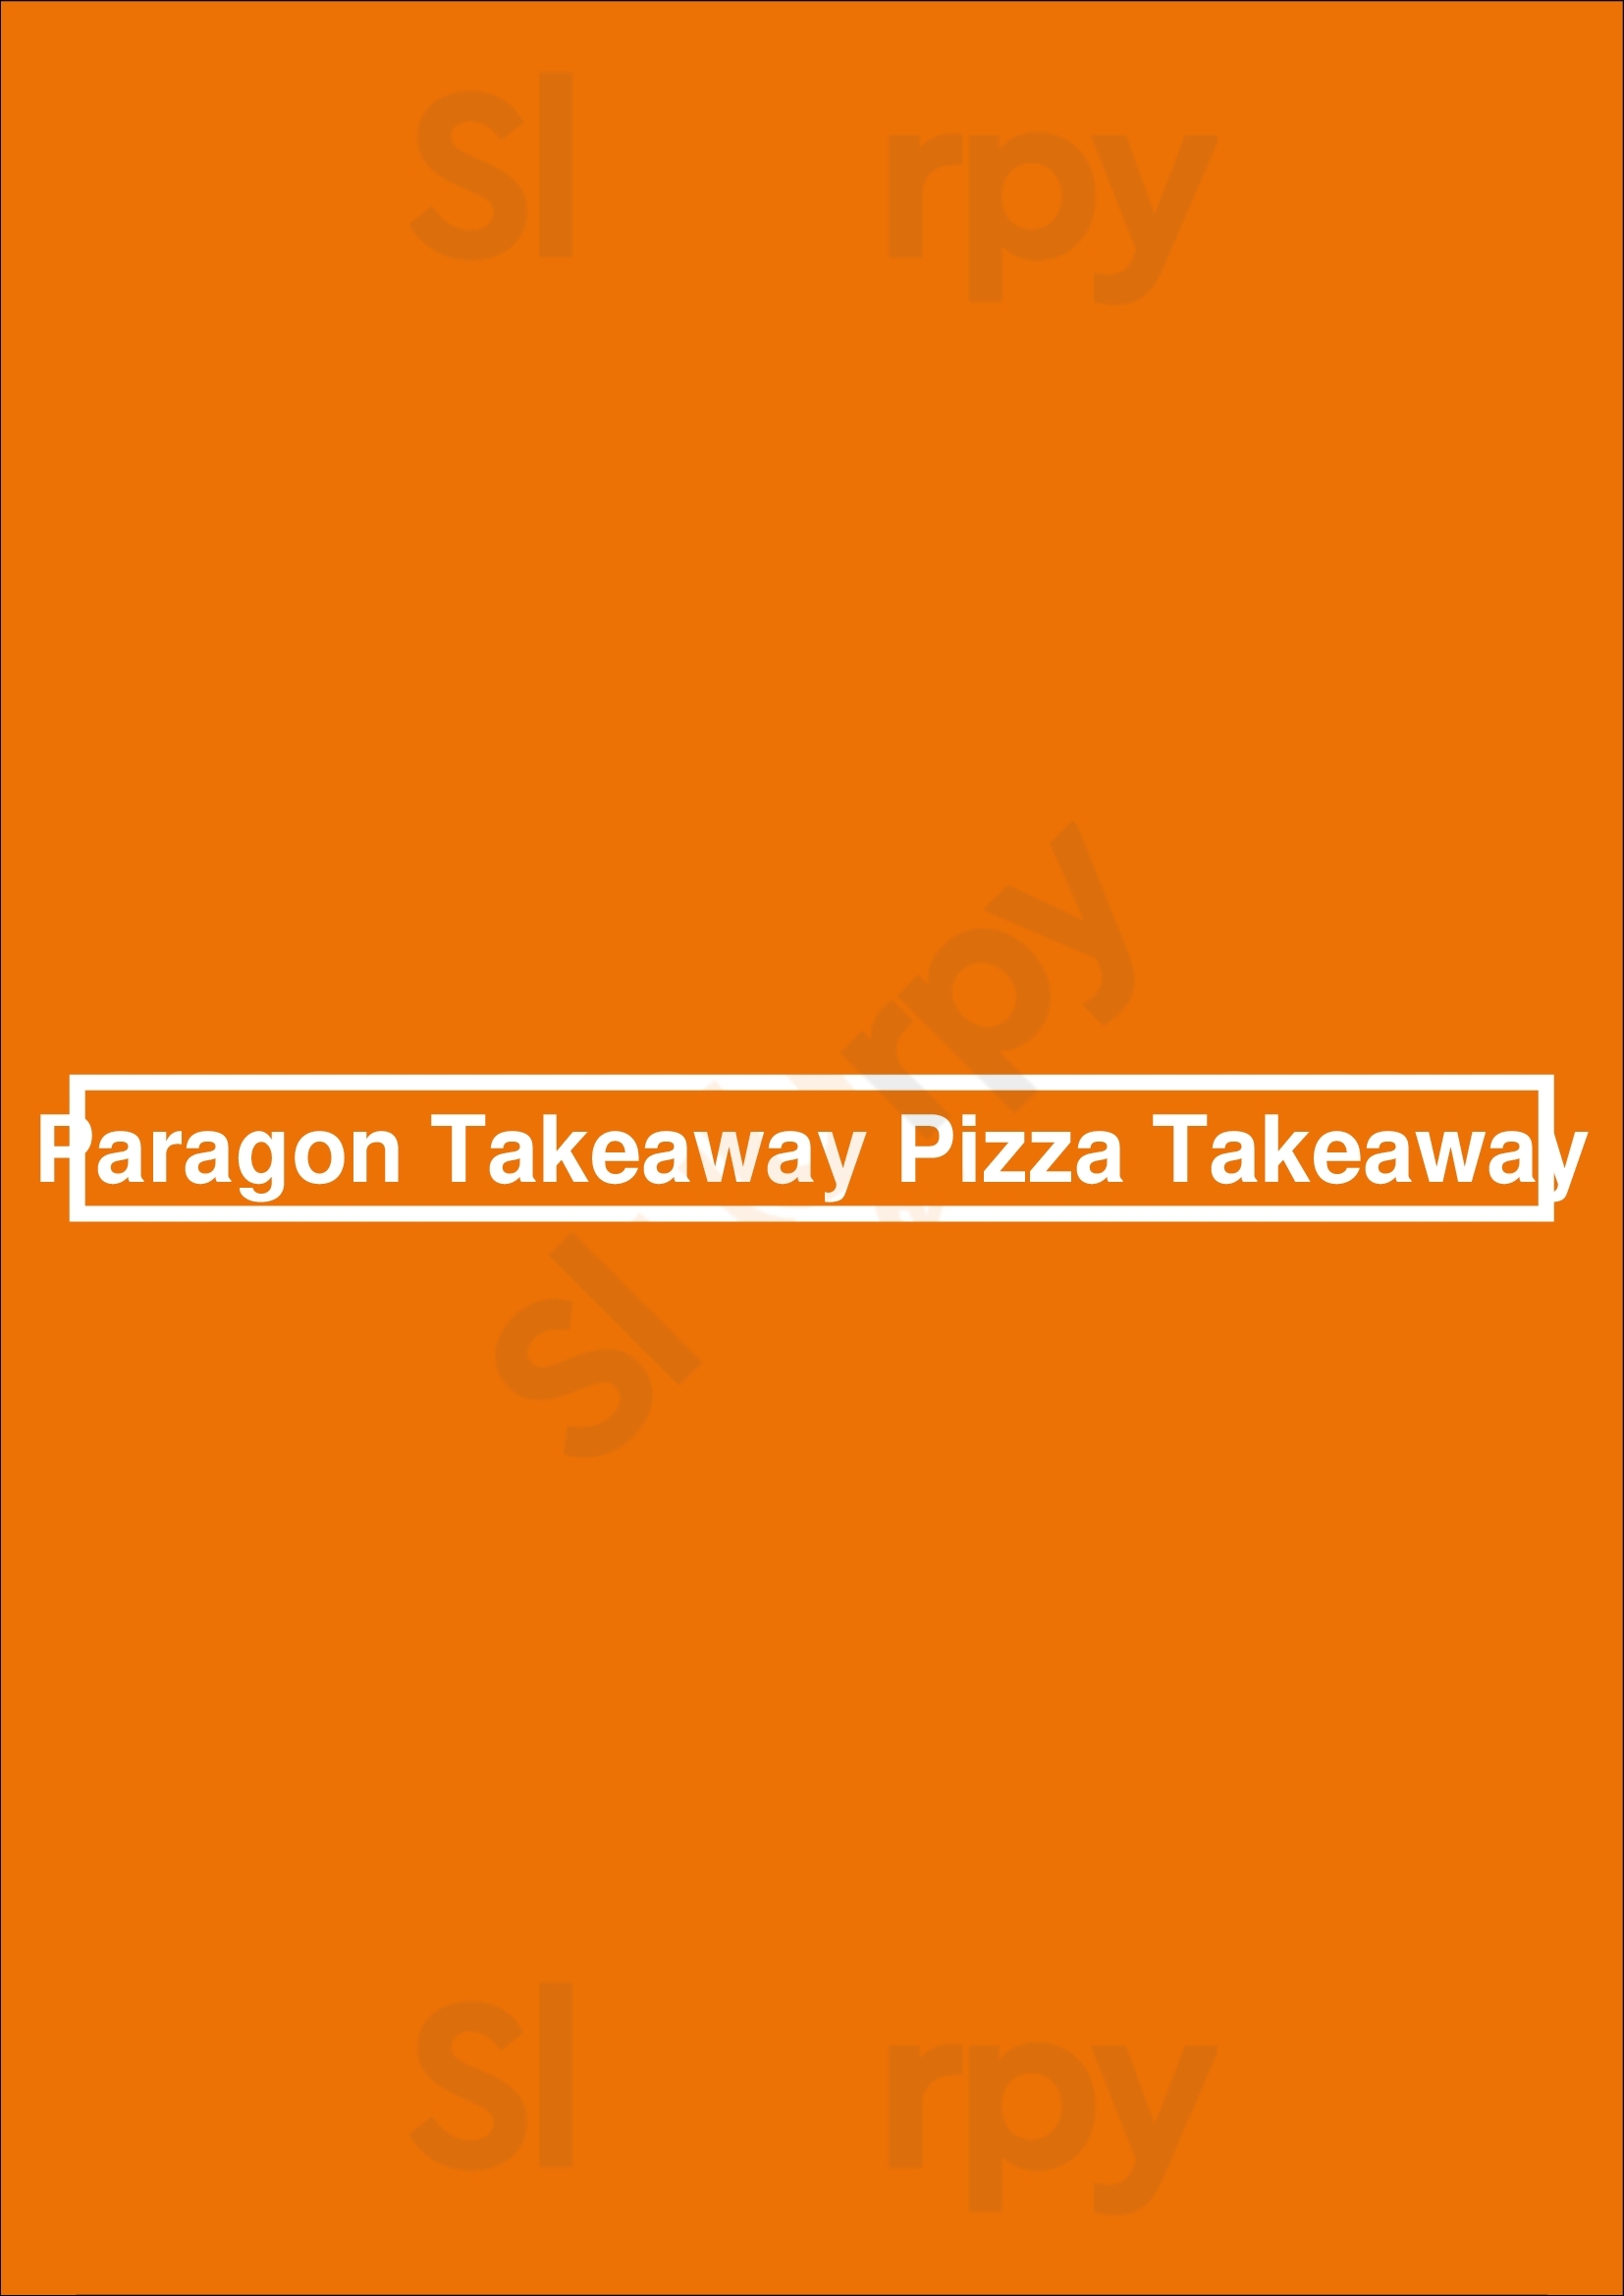 Paragon Takeaway Pizza Takeaway Knaresborough Menu - 1